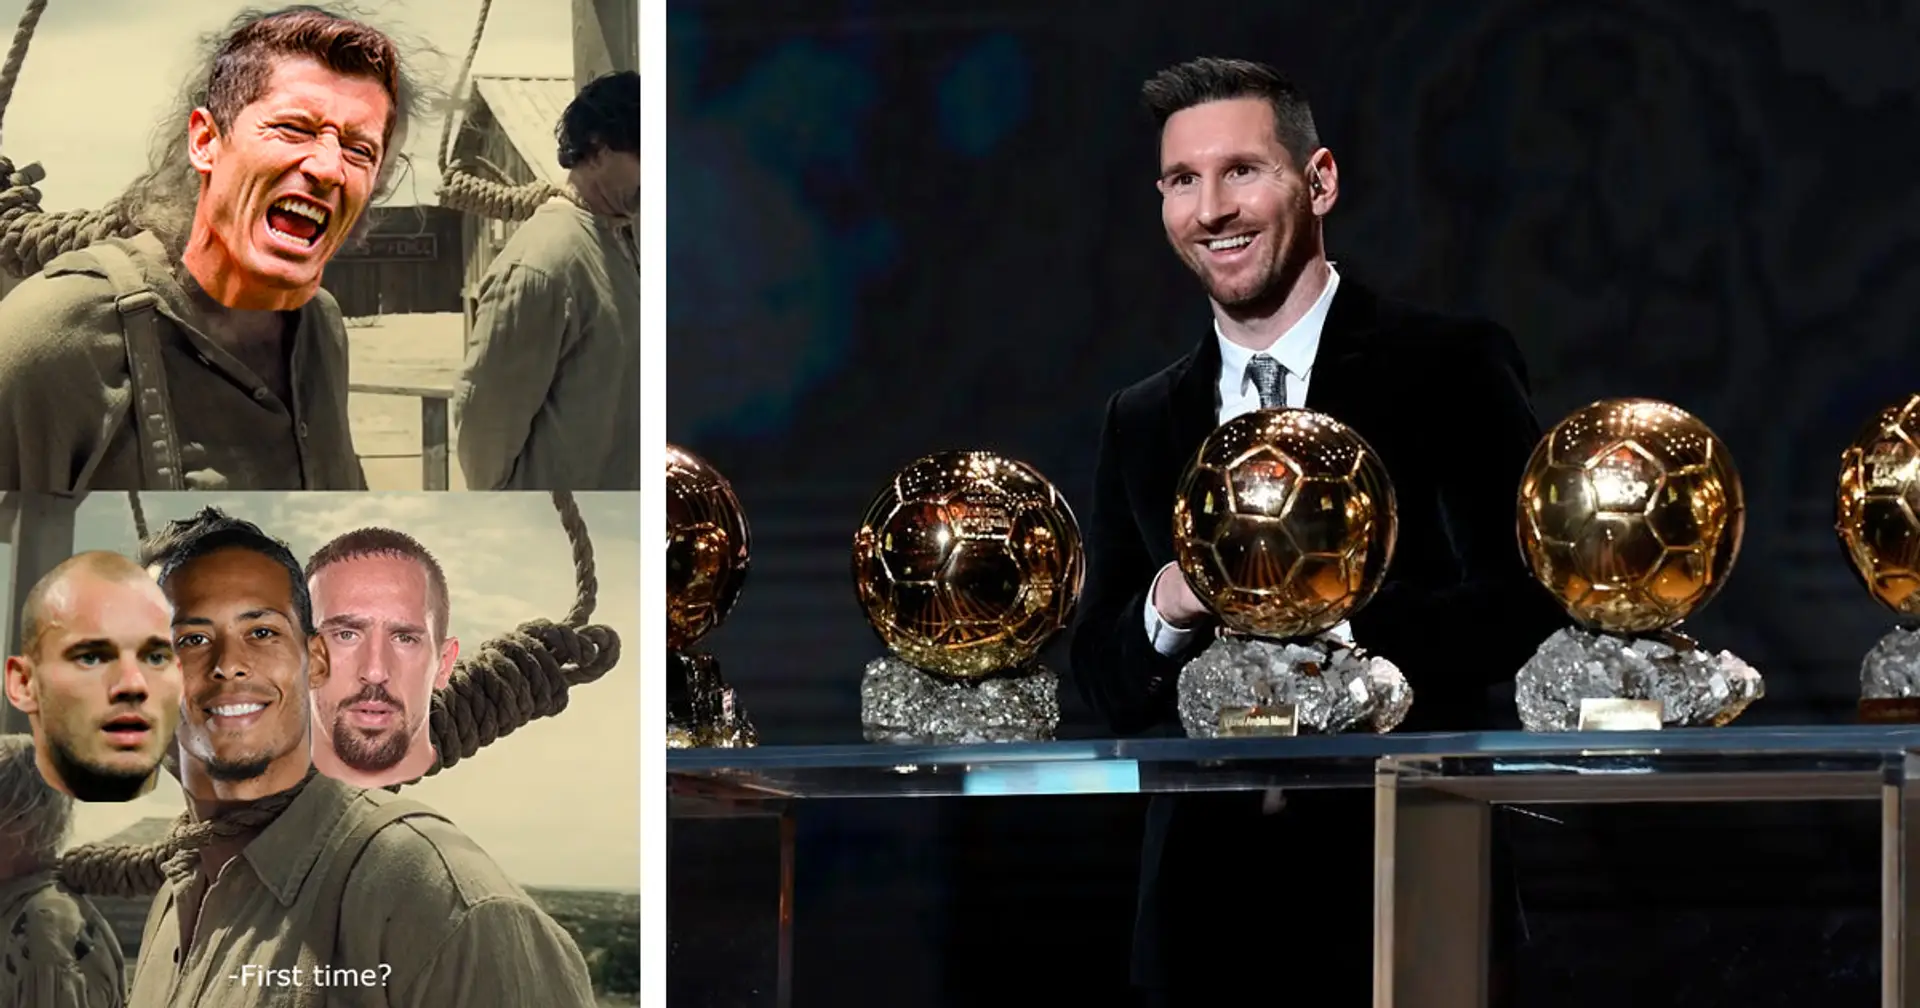 Enttäuscht, aber nicht überrascht: Lewandowski ist nicht der erste Spieler, der von Messi beraubt wurde